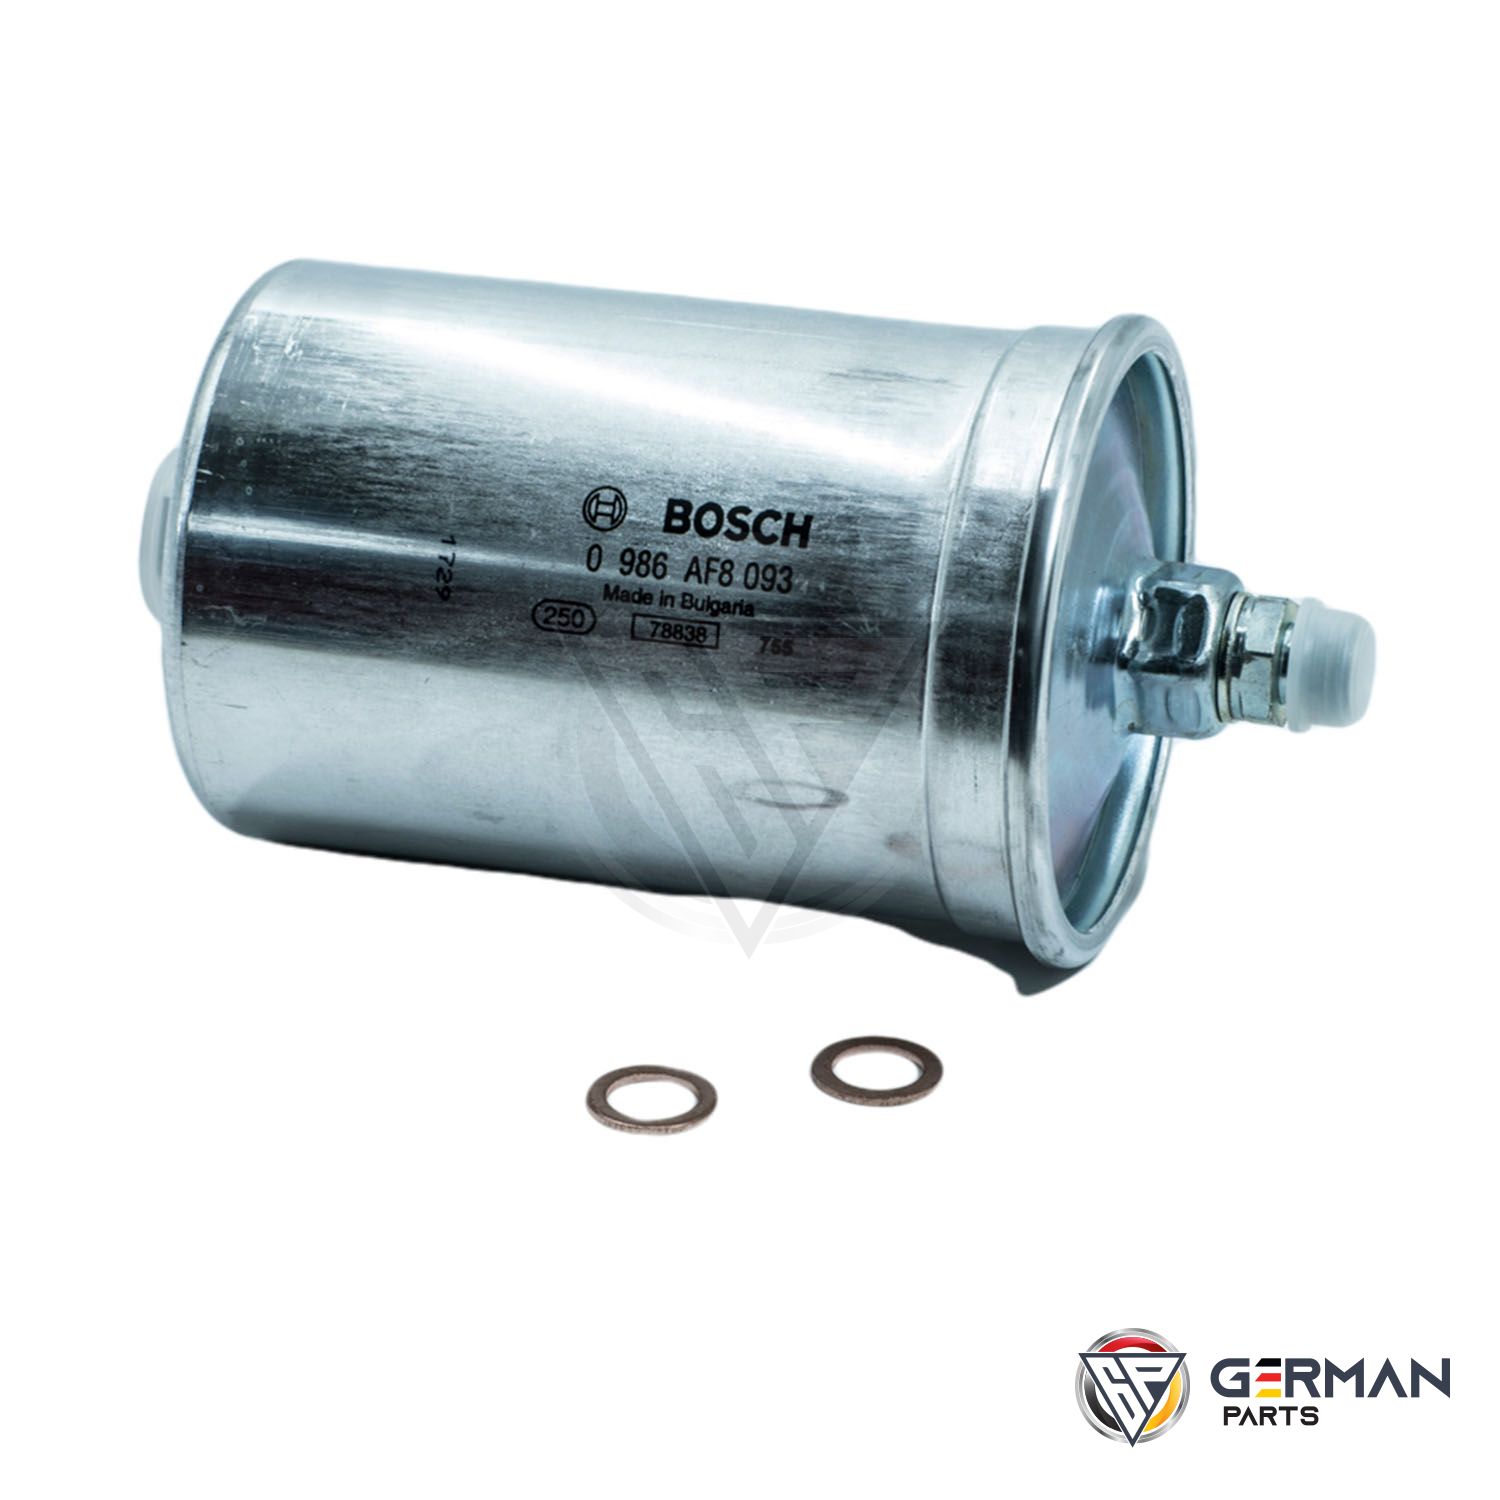 Buy Bosch Fuel Filter 0450905177 - German Parts